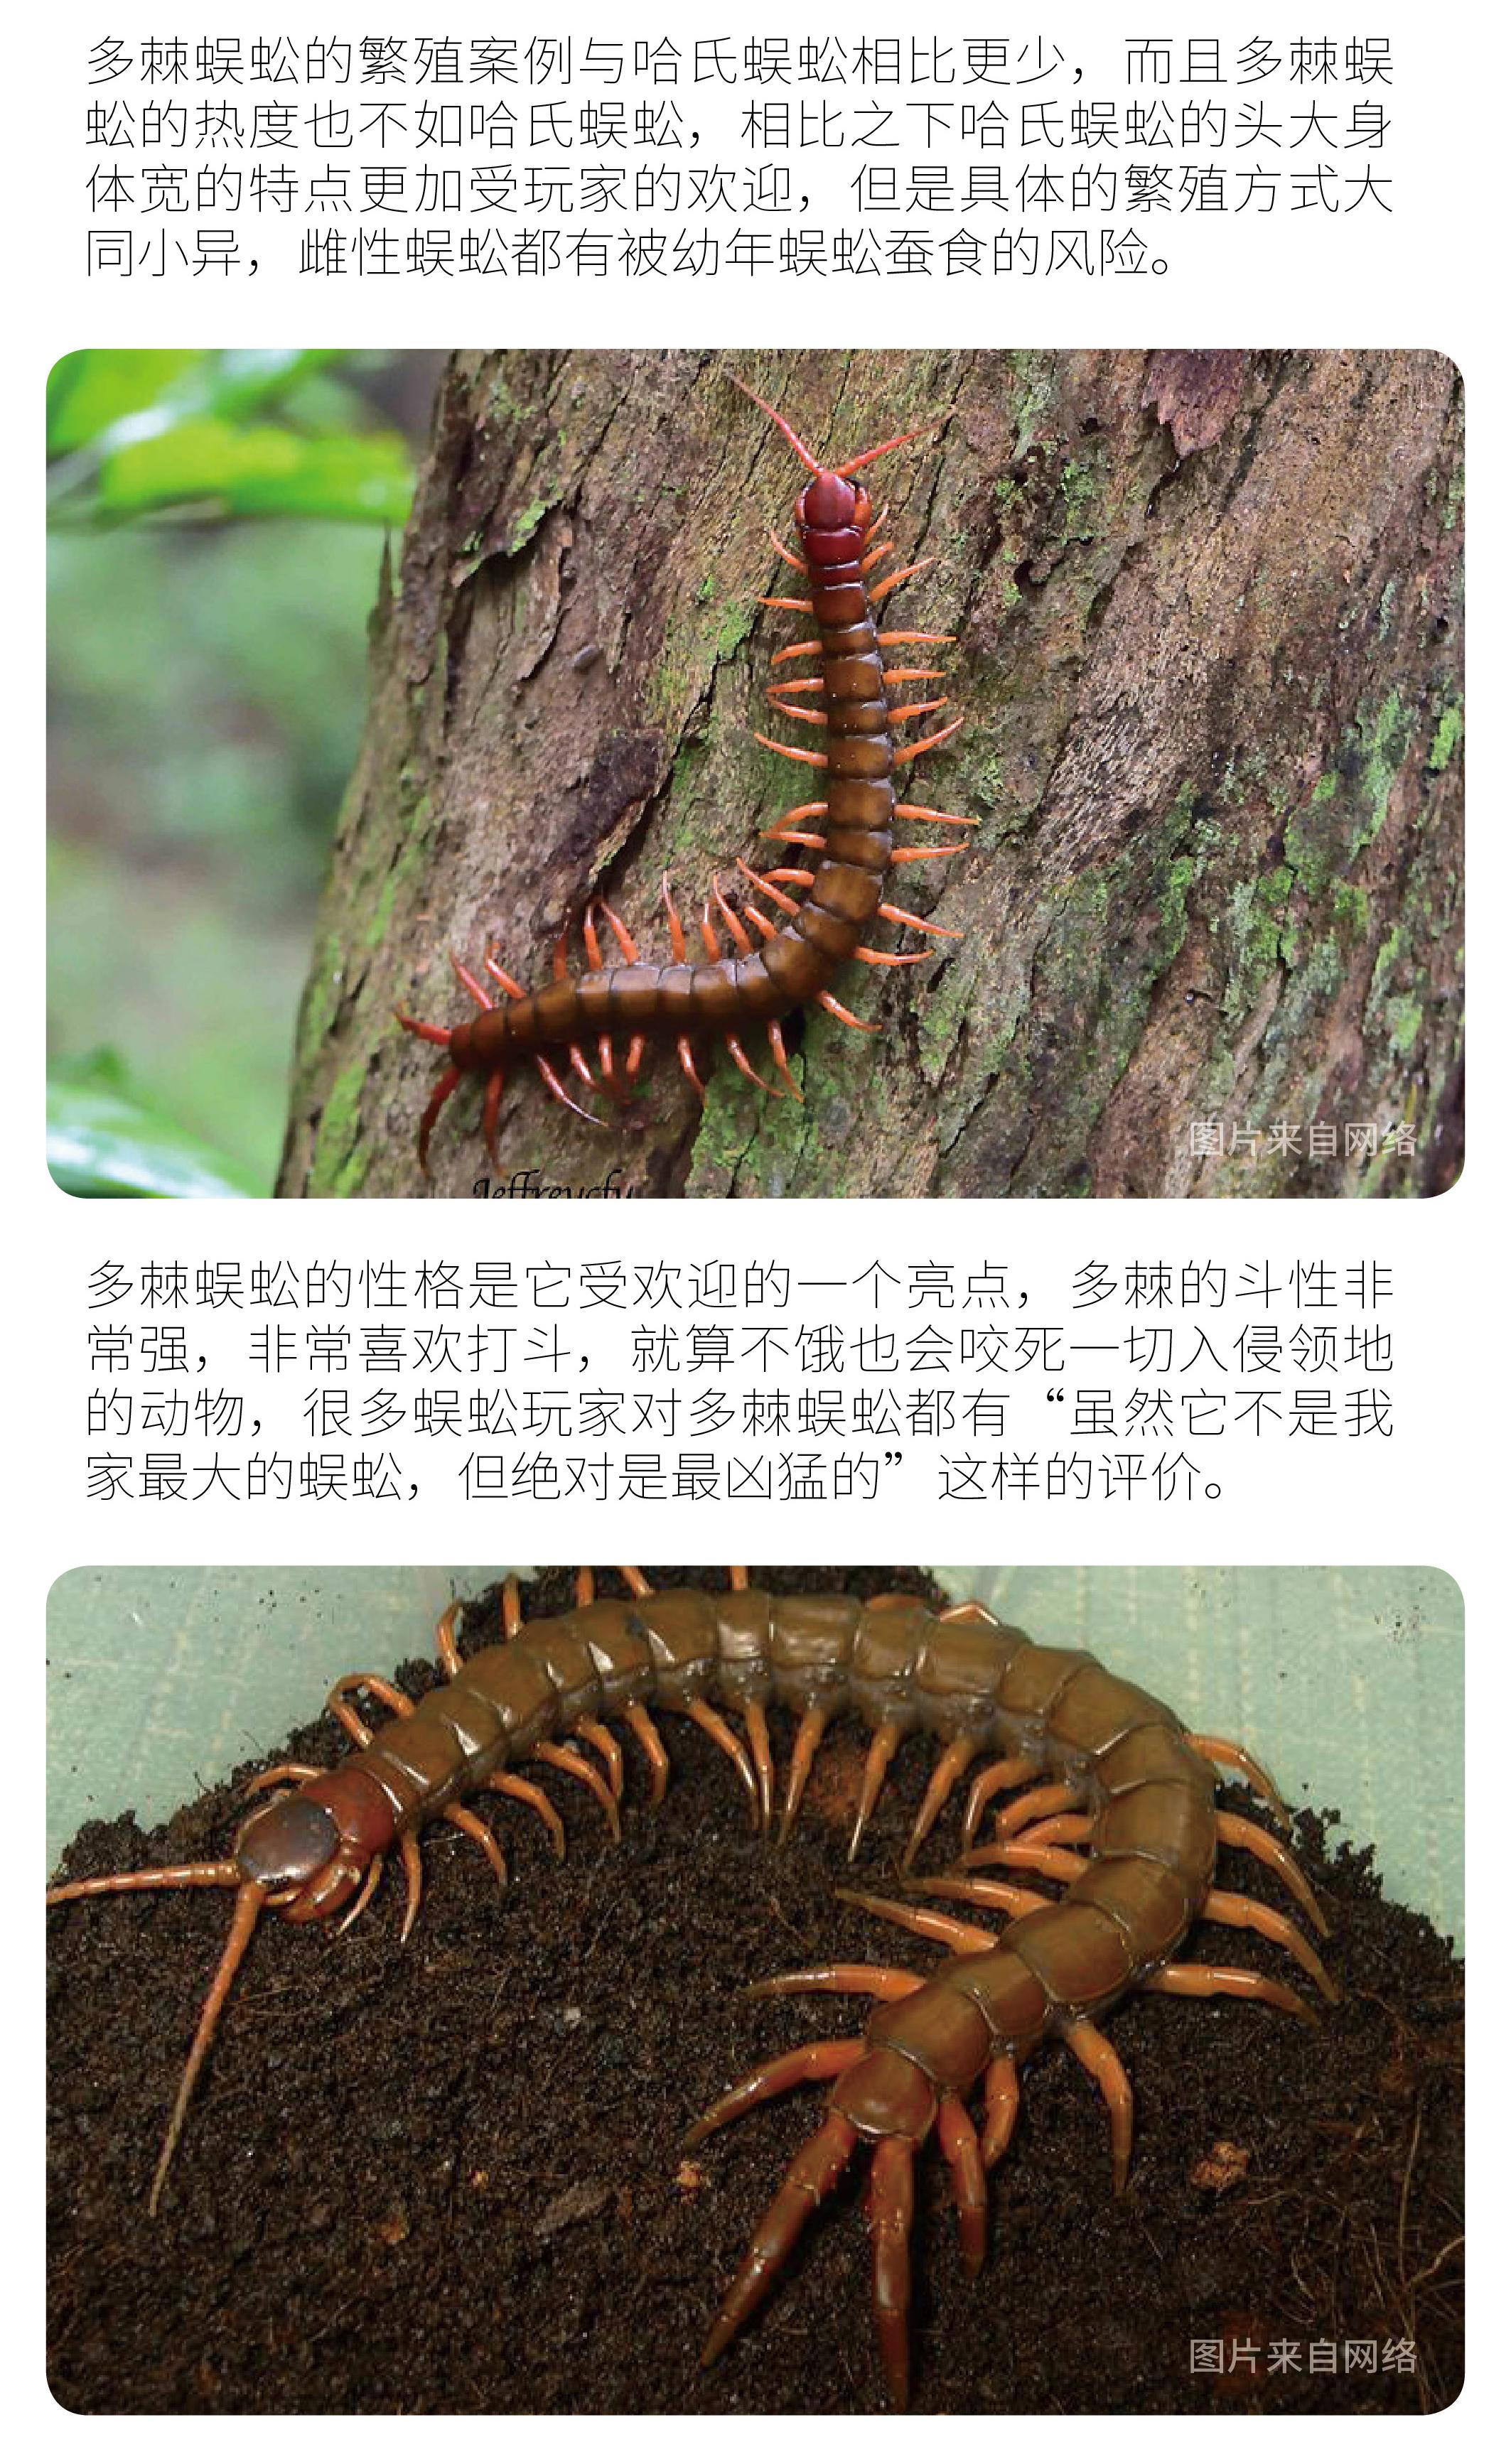 尖盲蜈蚣vs多棘蜈蚣图片